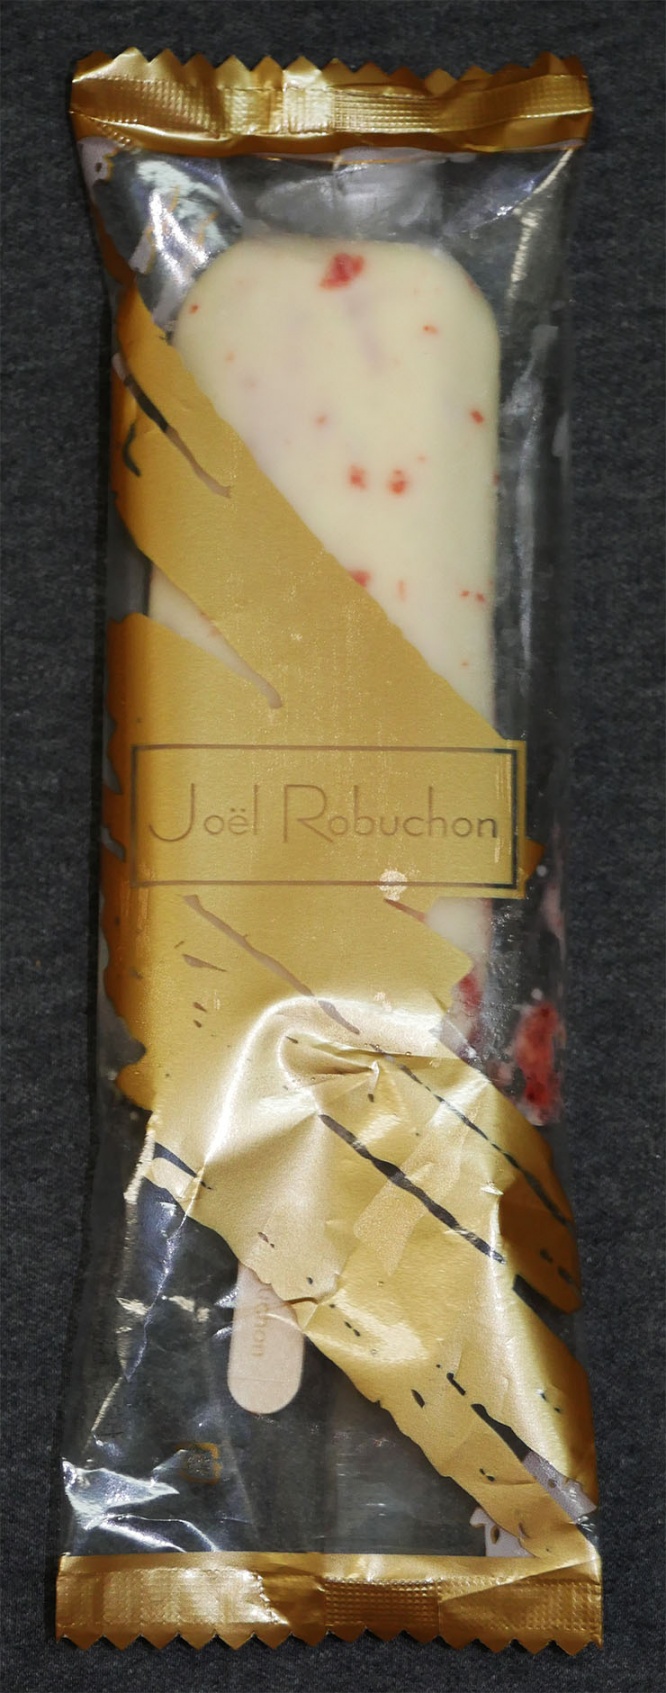 joel-robuchon-ice3